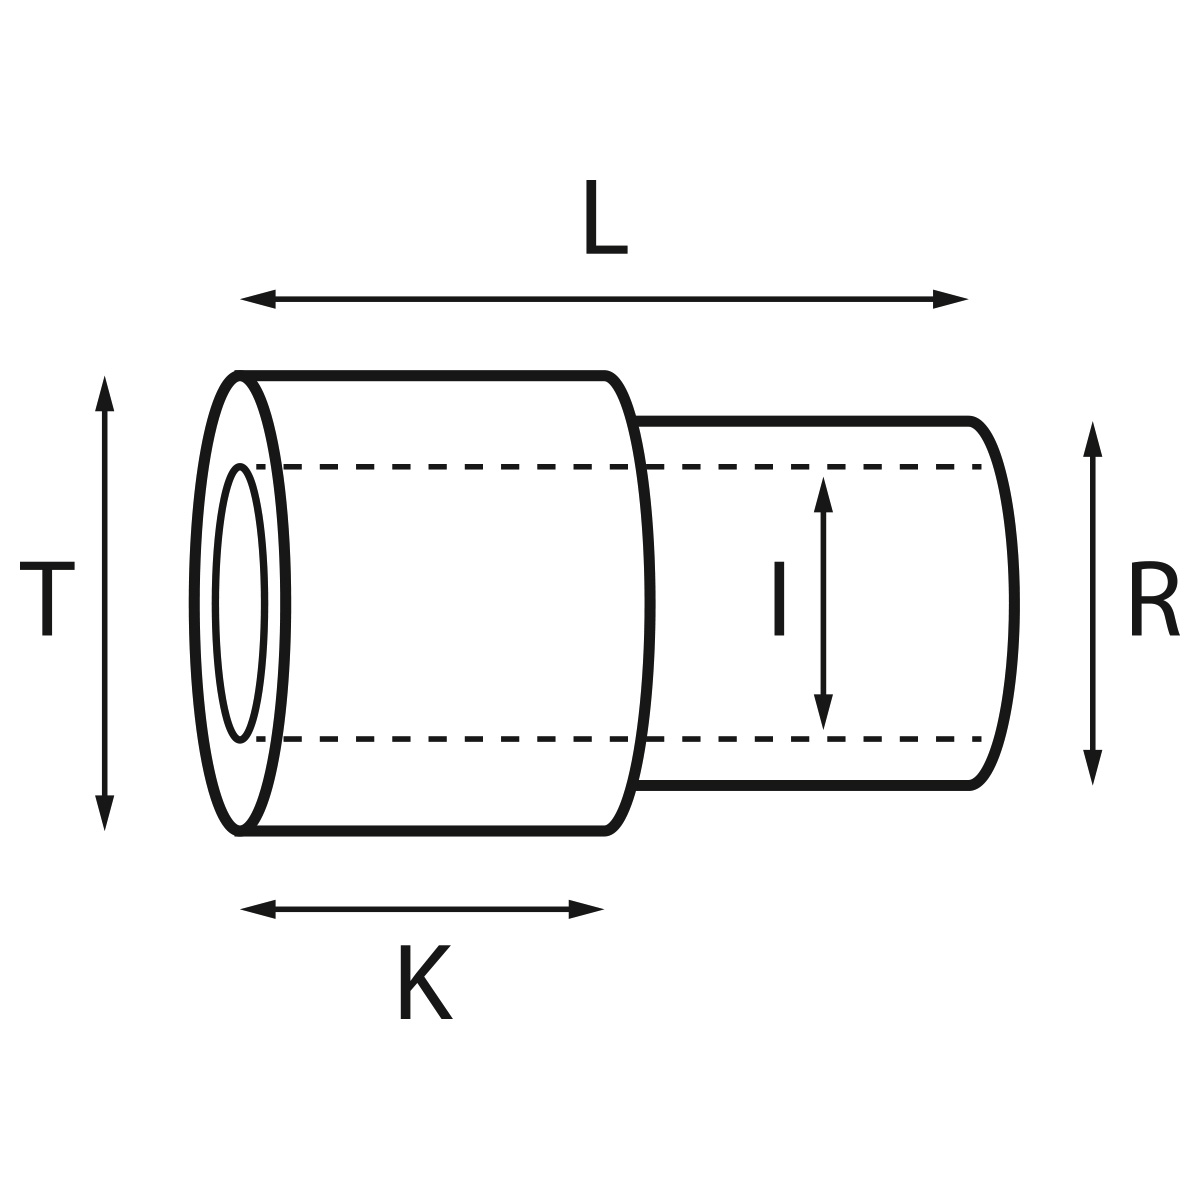 Gehäusetube Typ AS 13826, Tubus Ø 2 mm, Gesamtlänge 4,2 mm, für wasserdichte Kronen